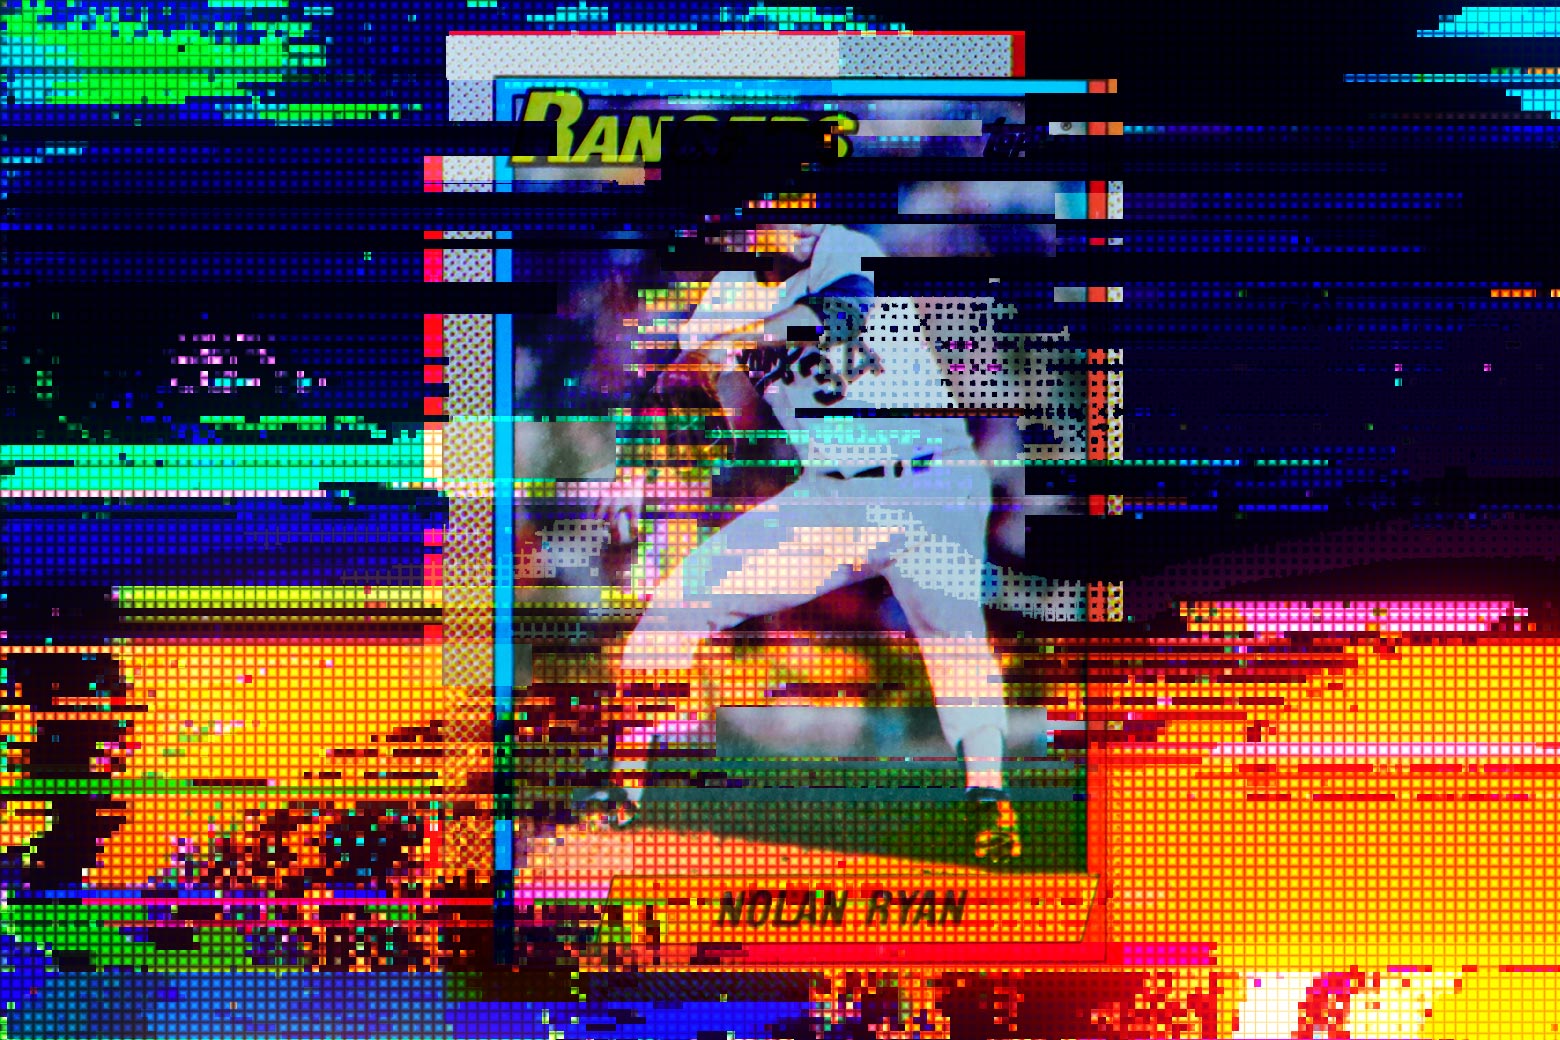 Glitchy, pixelated baseball card